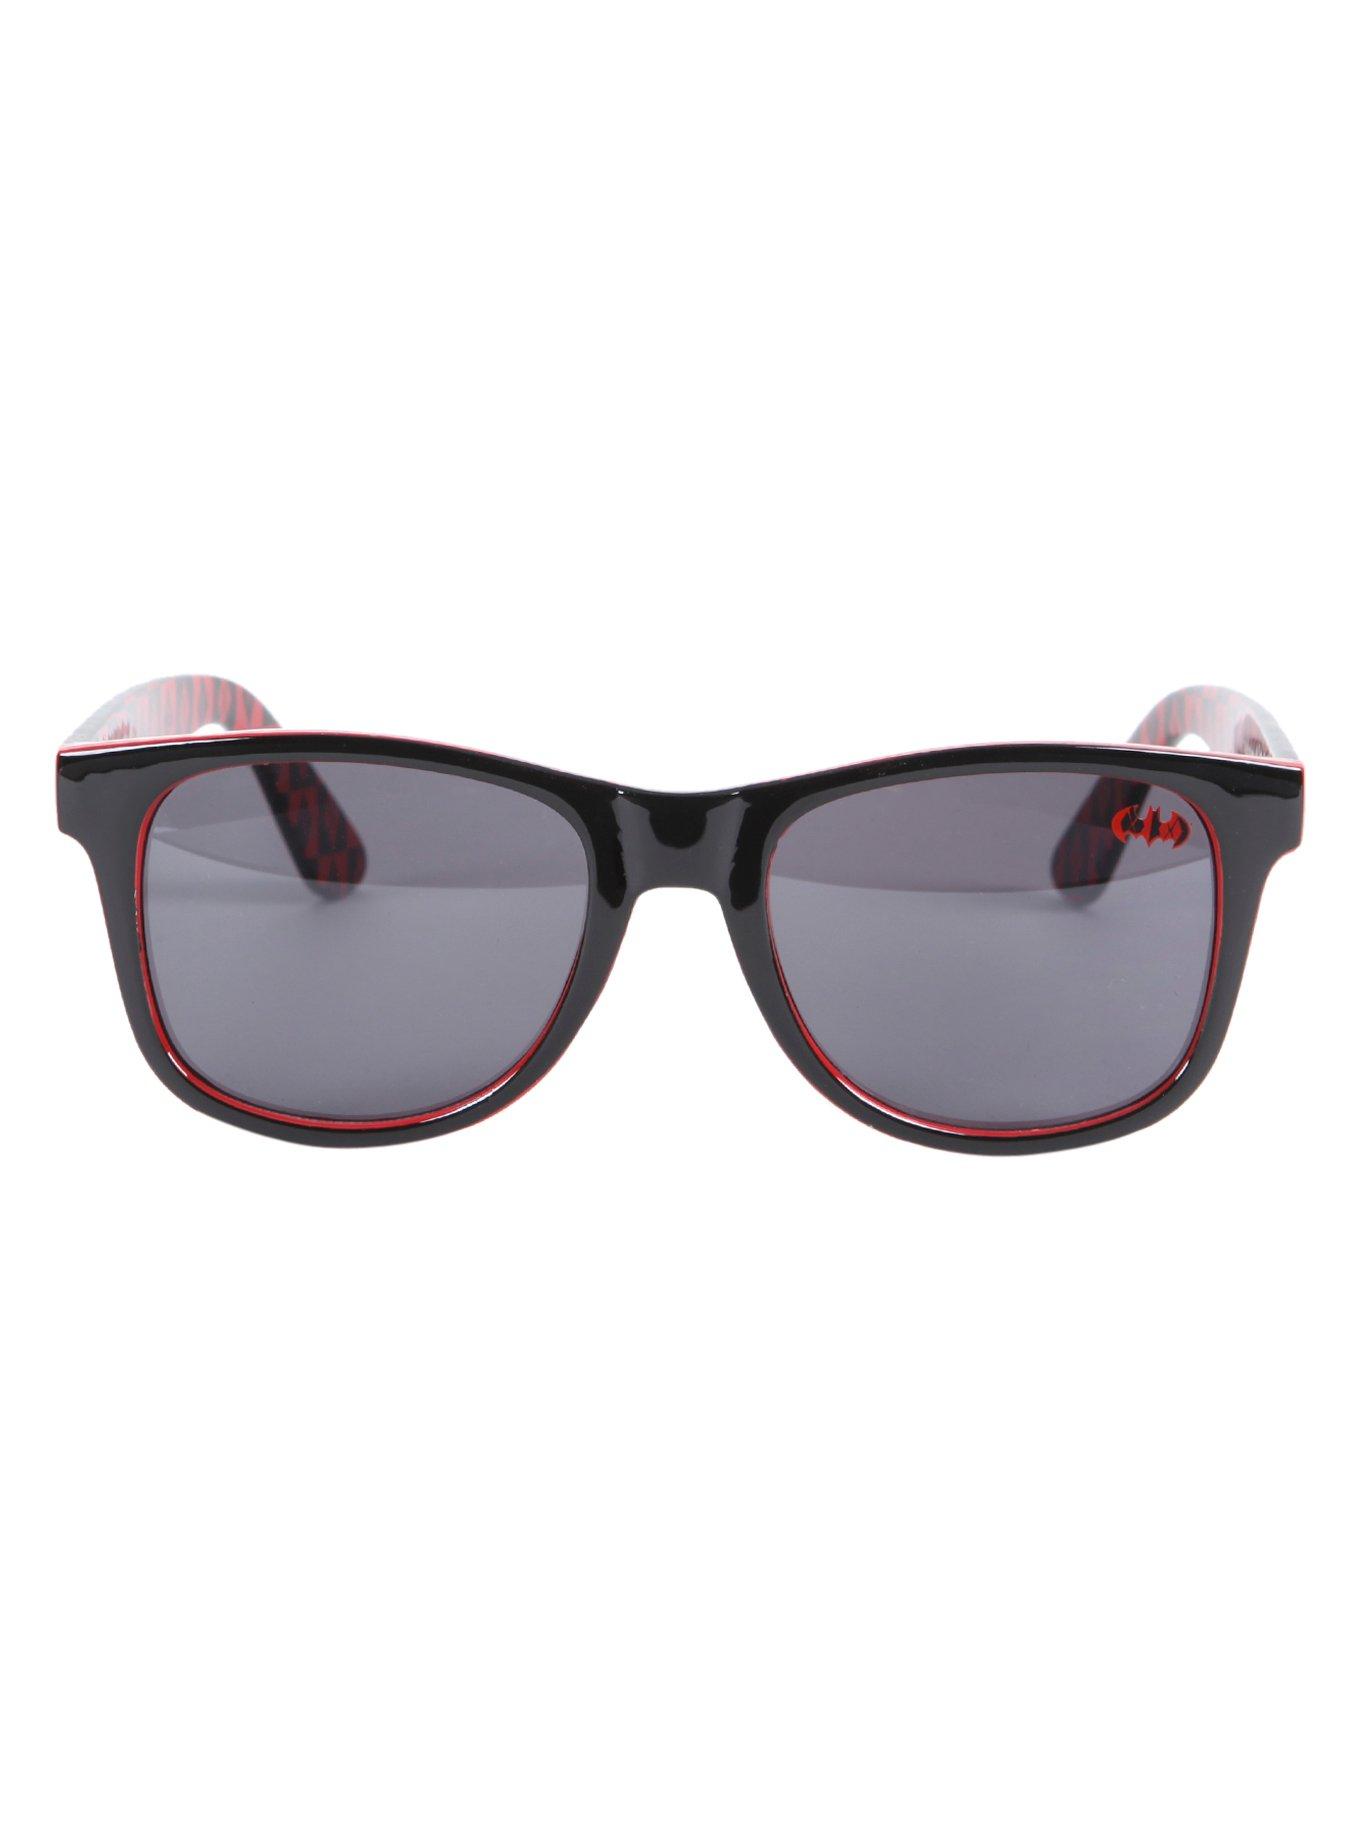 DC Comics Harley Quinn Sunglasses & Case Gift Set, , alternate